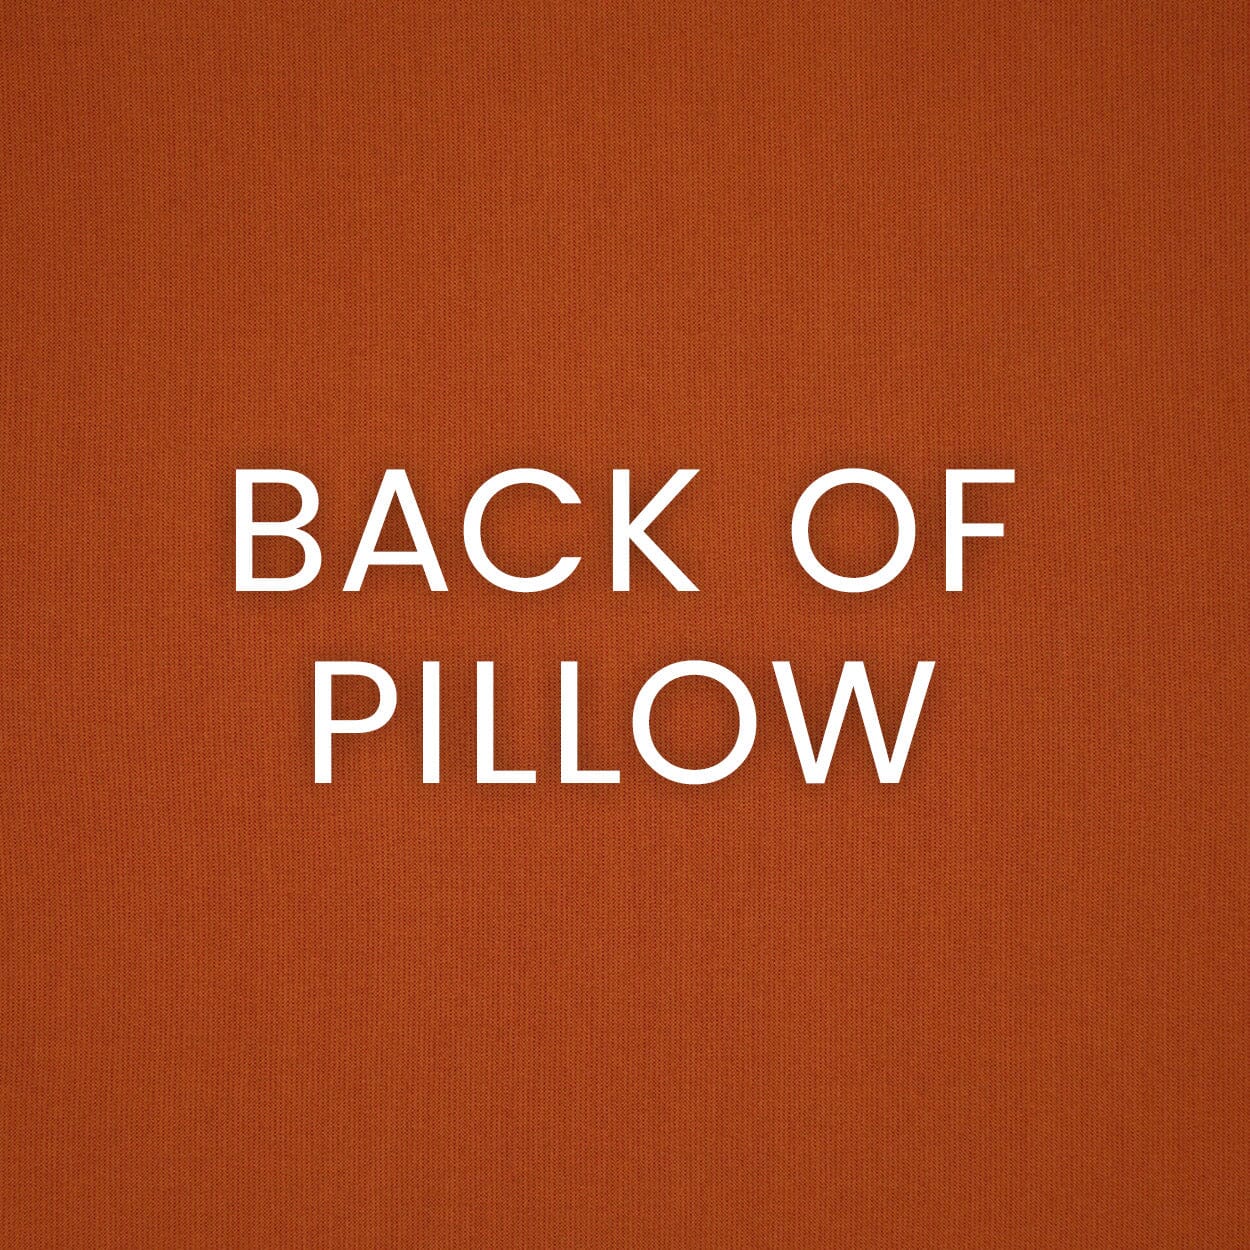 D.V. Kap 12" x 24" Outdoor Lumbar Pillow | Midori Nectarine Pillows D.V Kap Outdoor